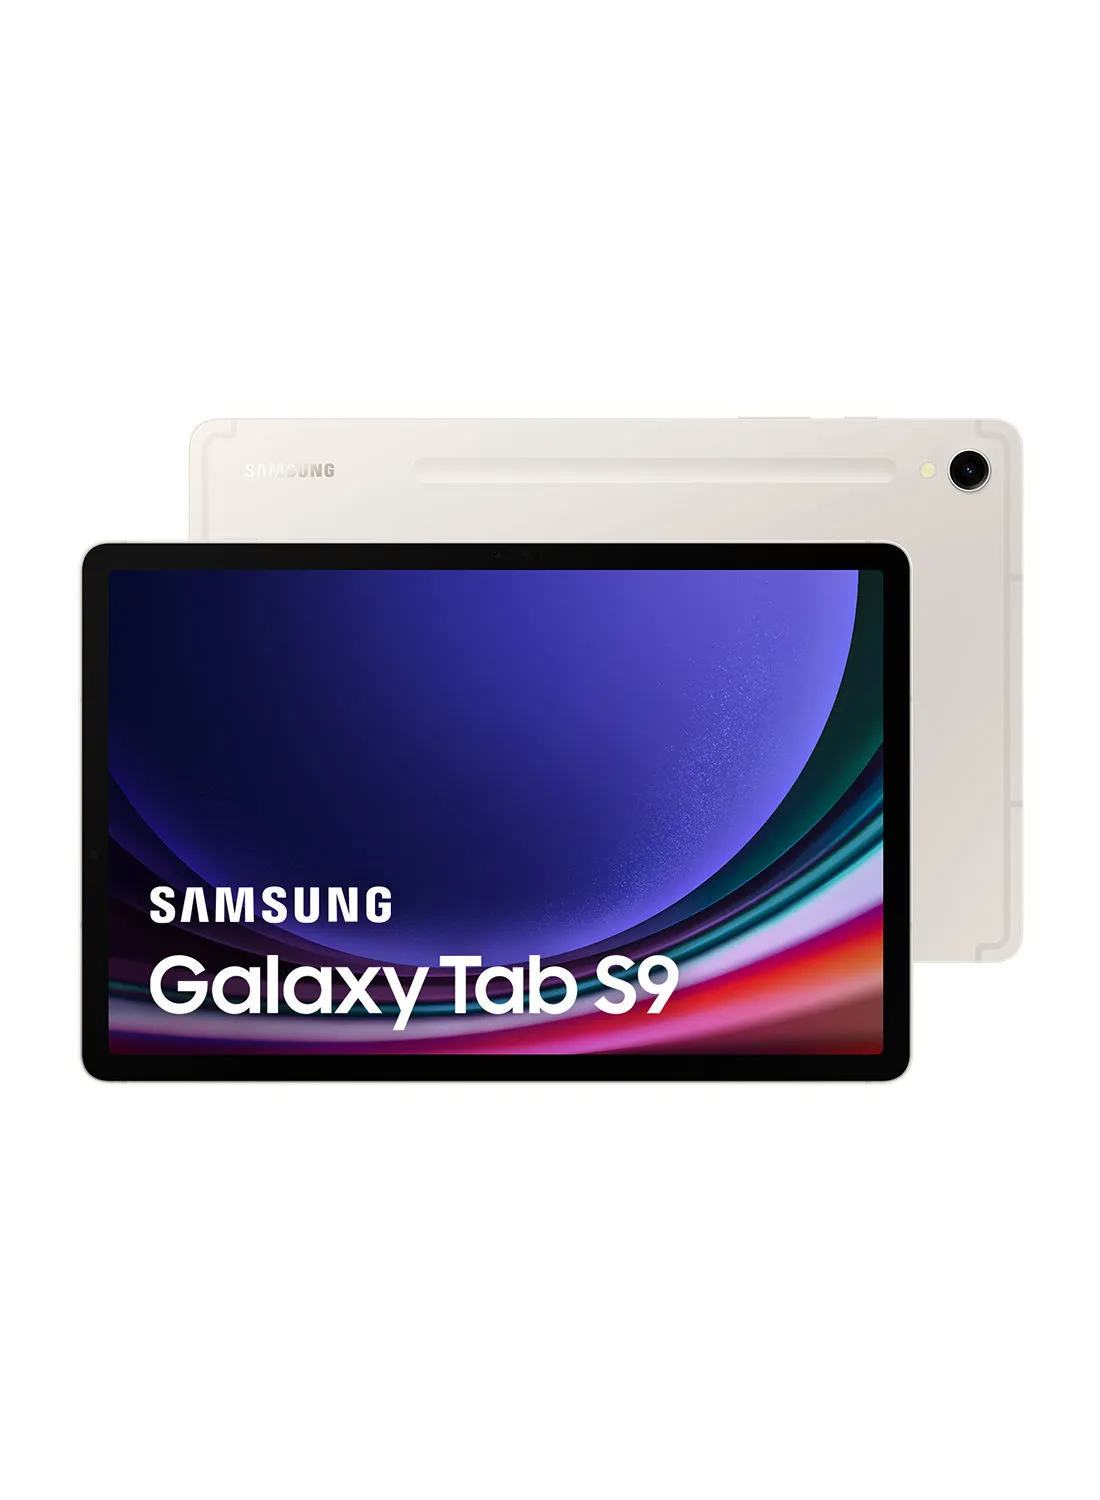 Samsung Galaxy Tab S9 Beige 8GB RAM 128GB Wifi - Middle East Version